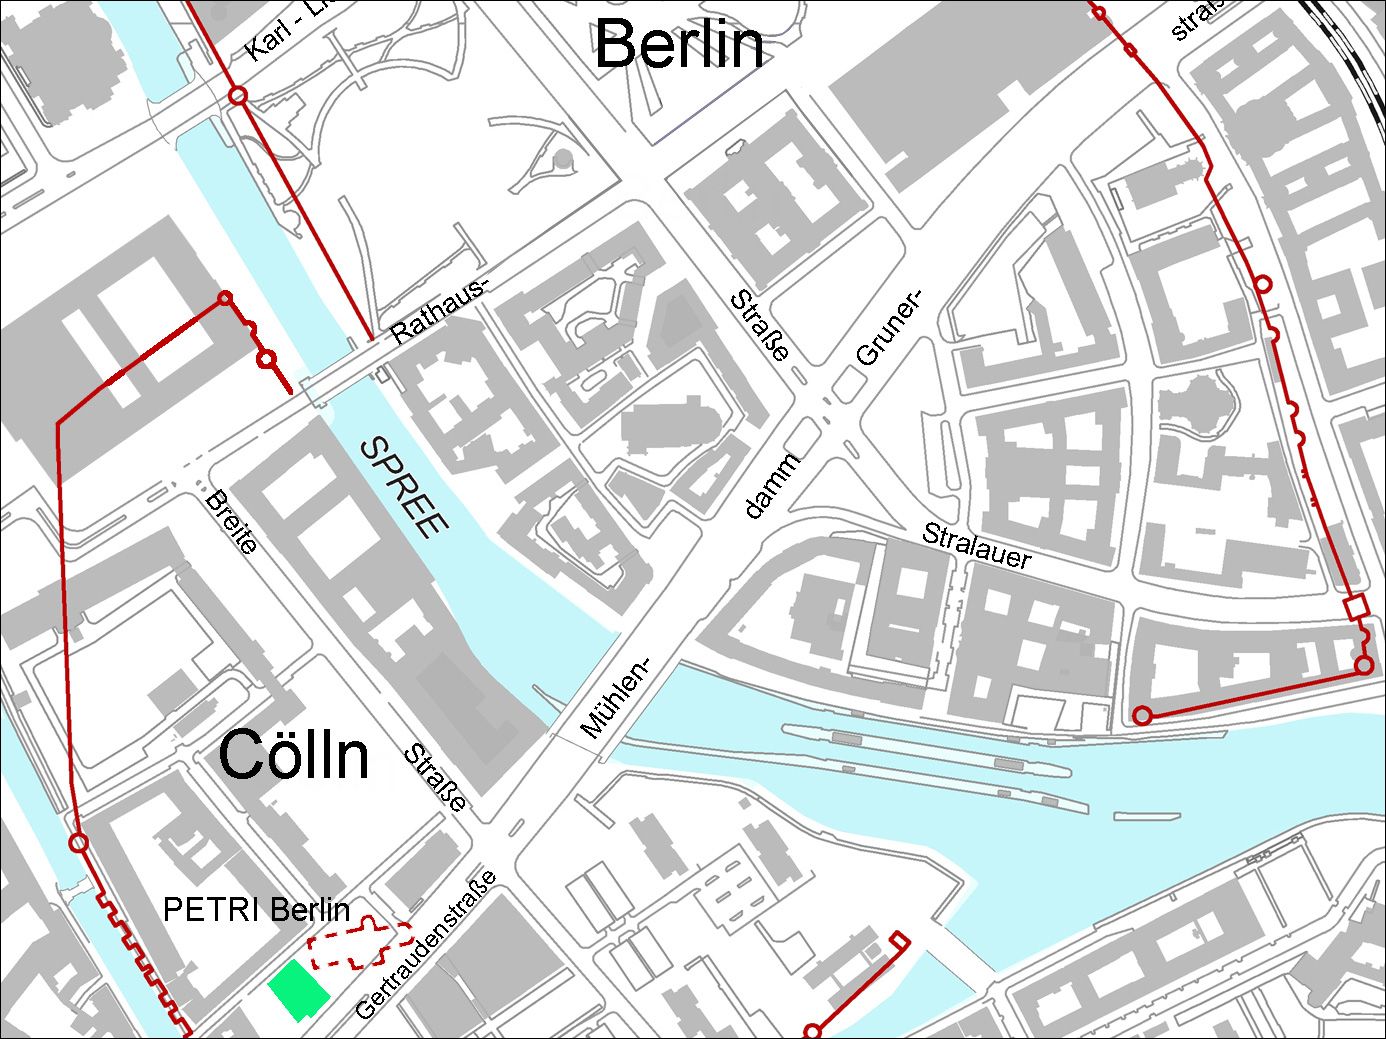 Bildvergrößerung: PETRI Berlin im mittelalterlichen Kern von Berlin